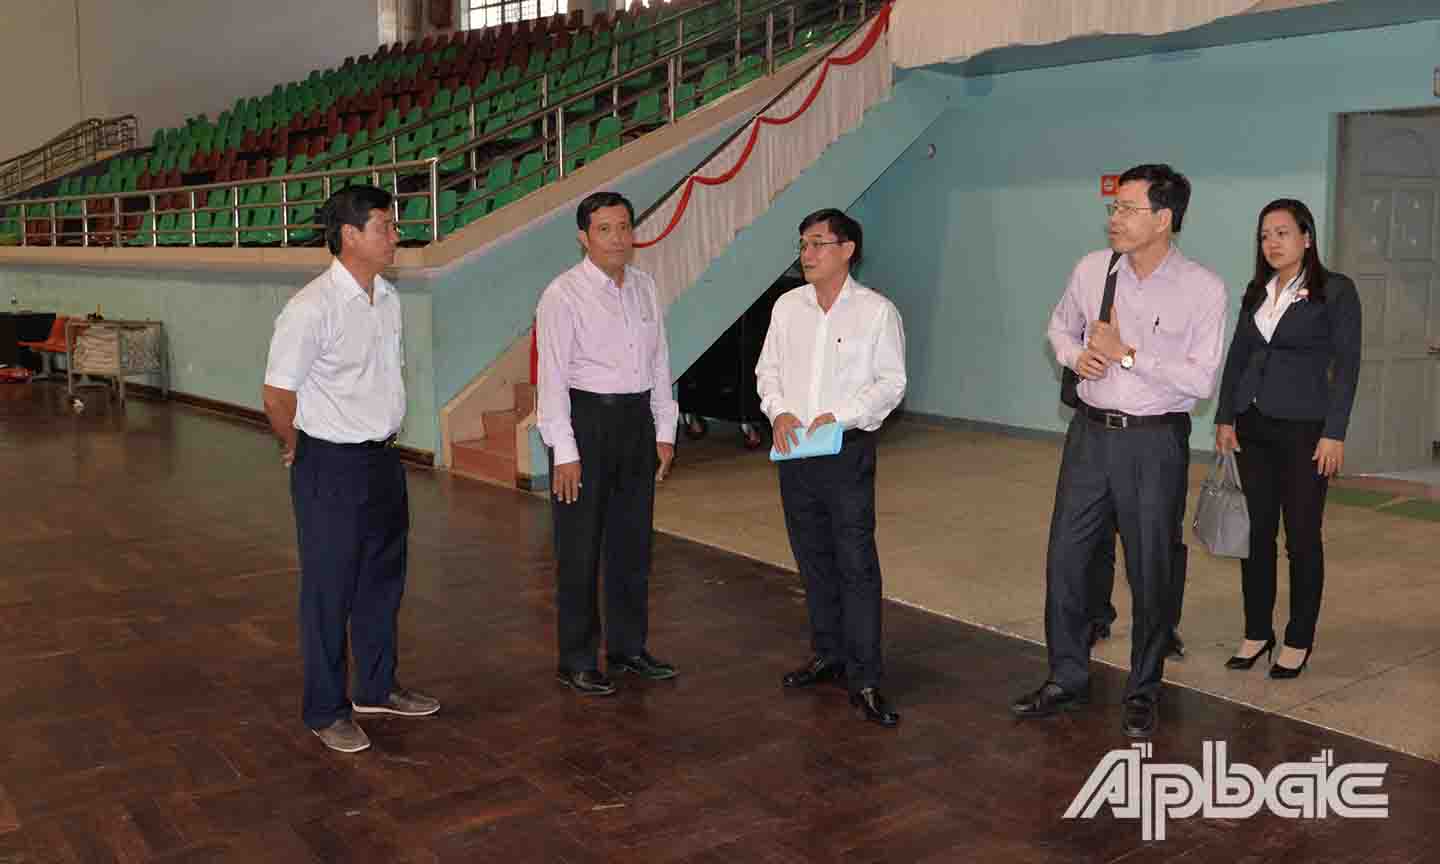 Đồng chí Nguyễn Văn Mười kiểm tra cơ sở vật chất ở Nhà Thi đấu đa môn tỉnh.